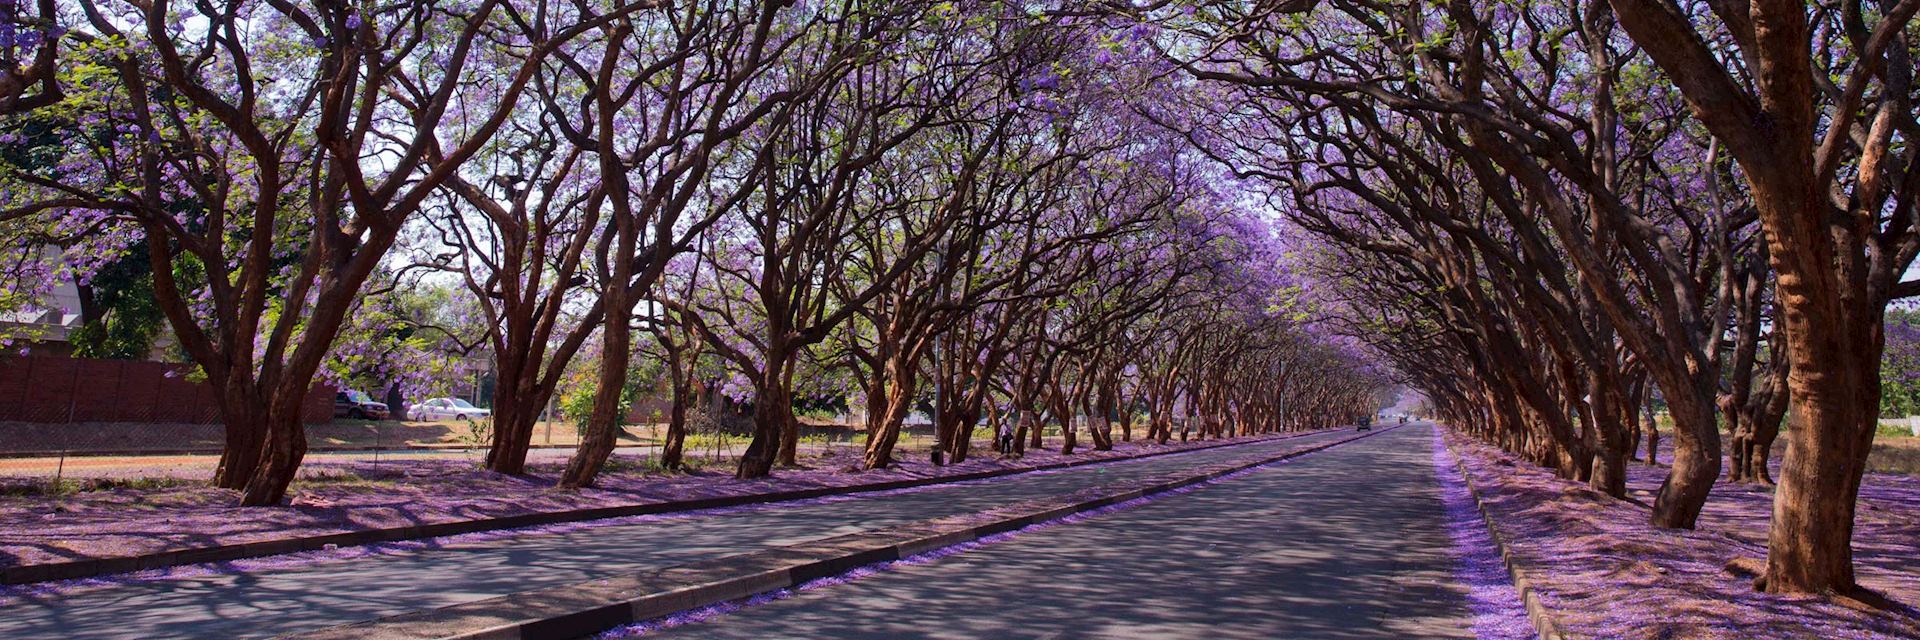 Jacaranda trees in Harare